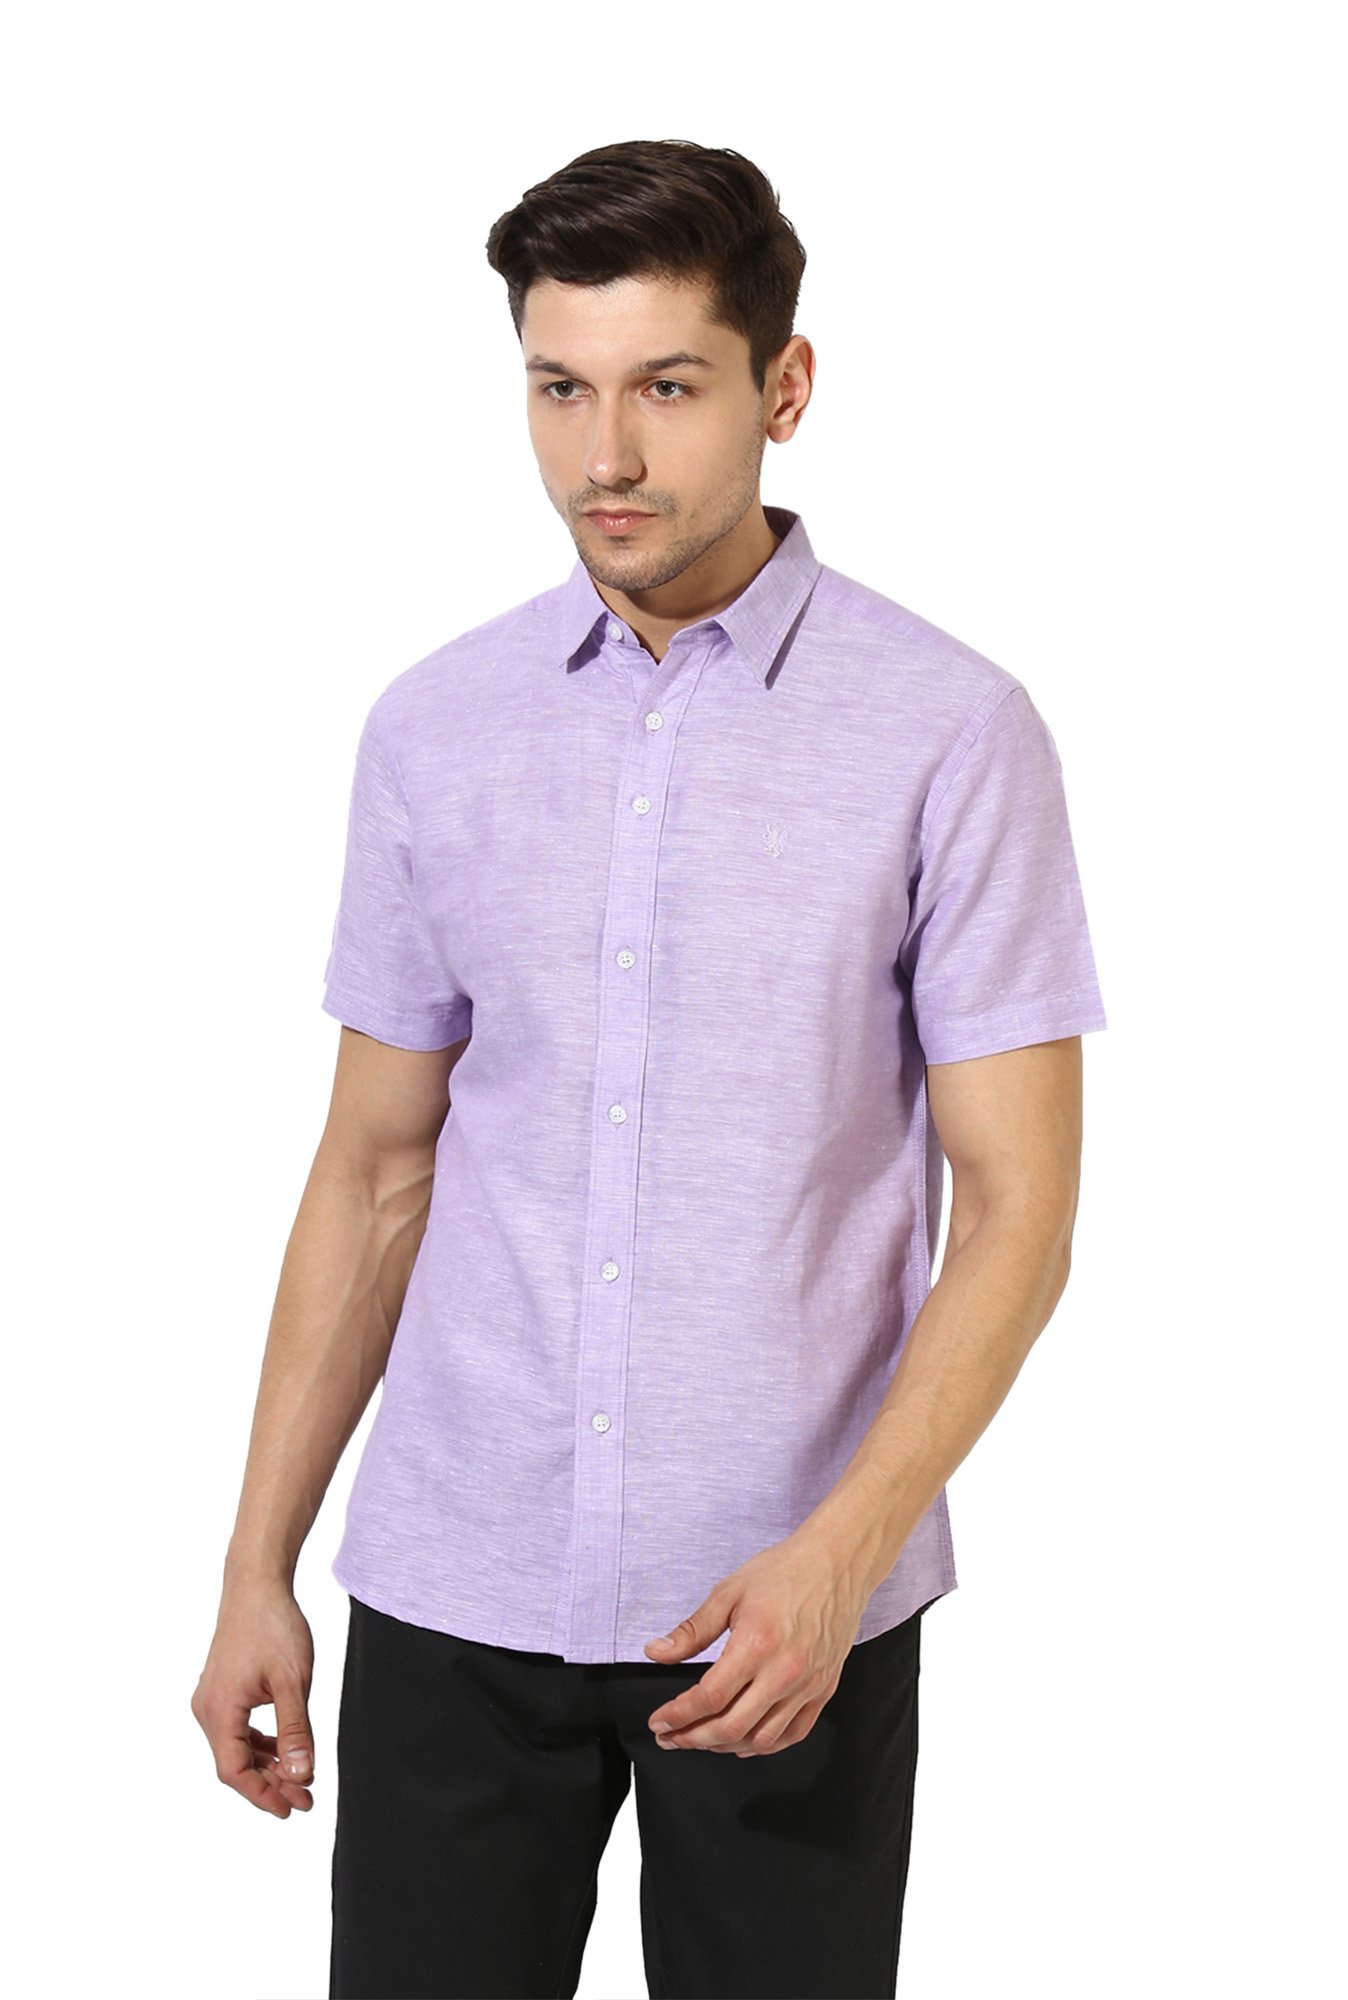 Buy Red Tape Lavender Short Sleeves Shirt for Men Online @ Tata CLiQ